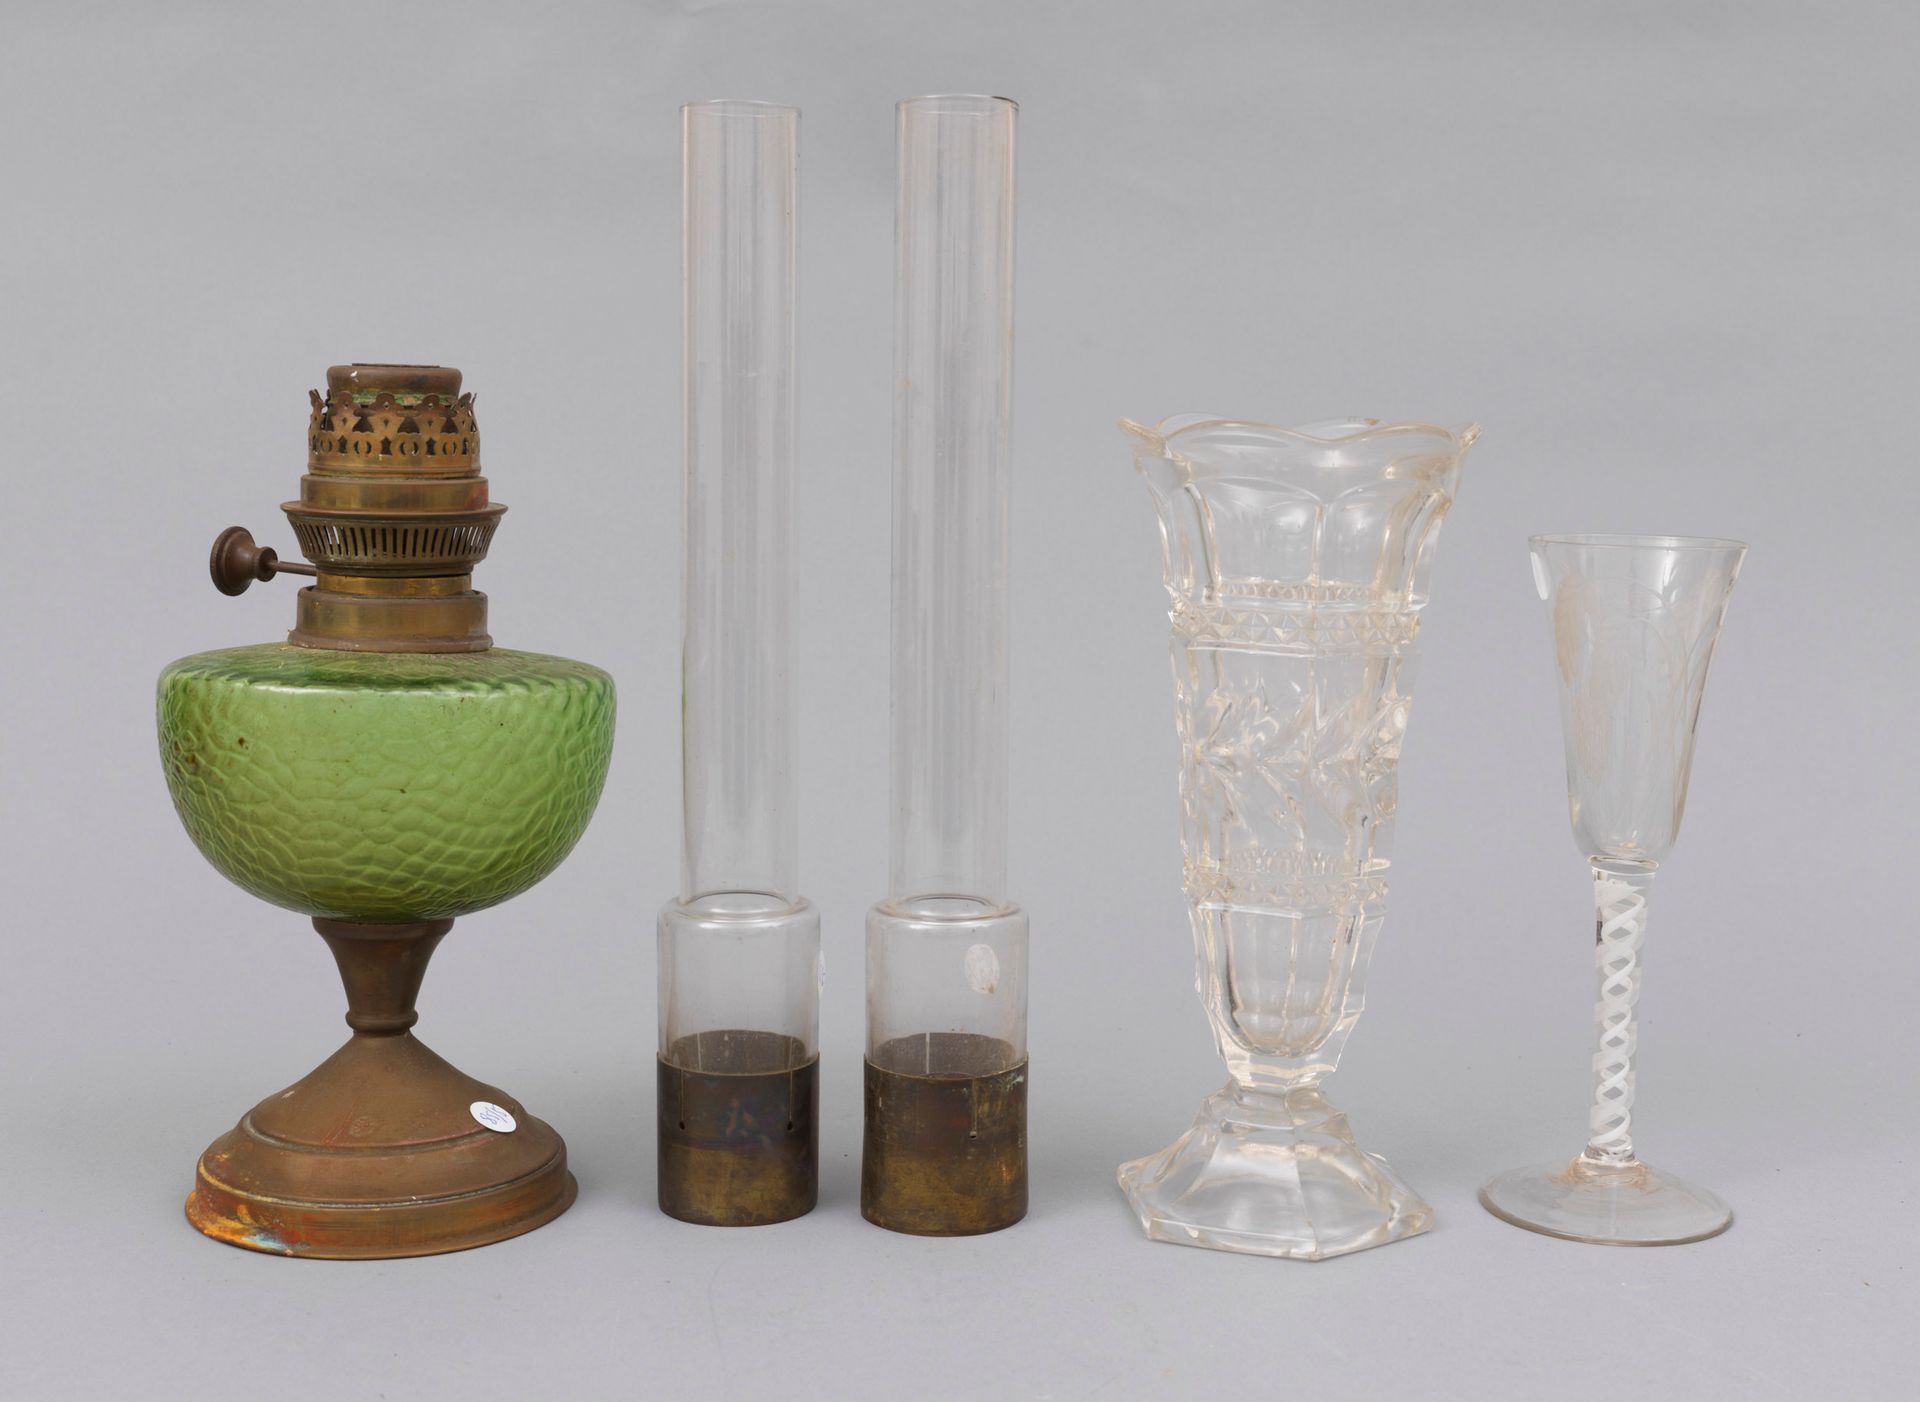 Porcelaine divers 
Verschiedene

Set bestehend aus einer Petroleumlampe und zwei&hellip;